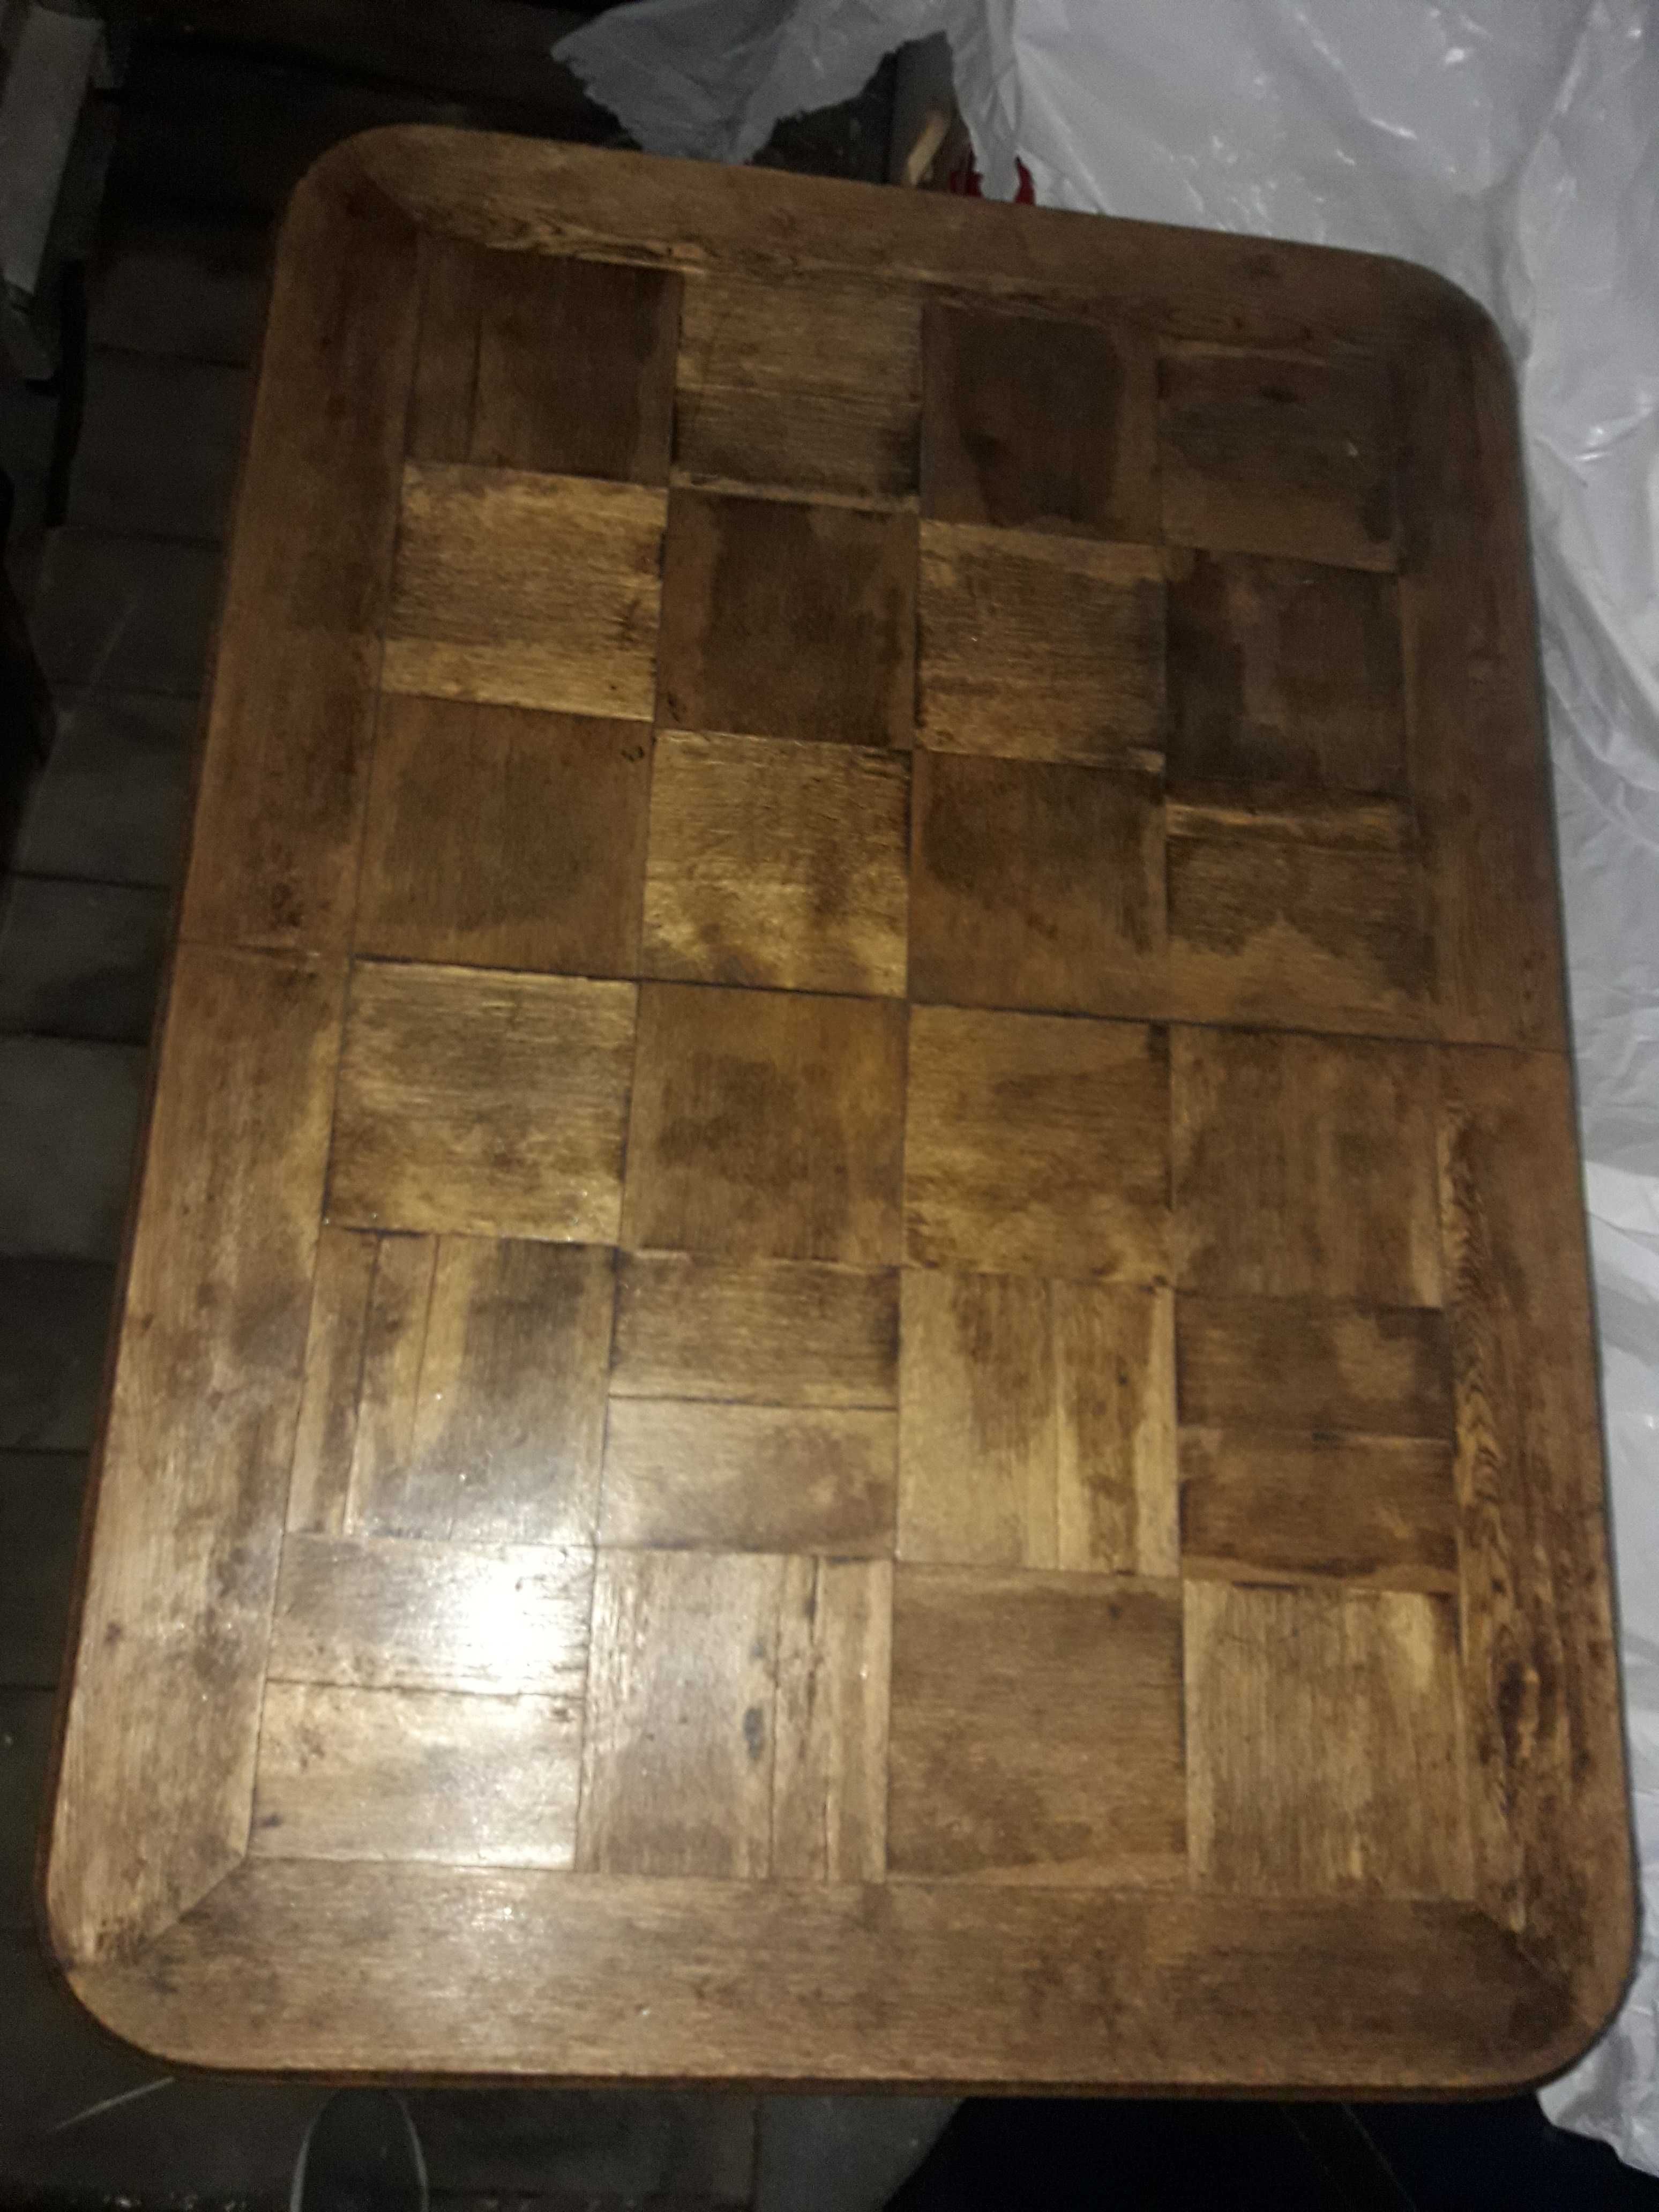 Stół stary drewniany rozkładany.